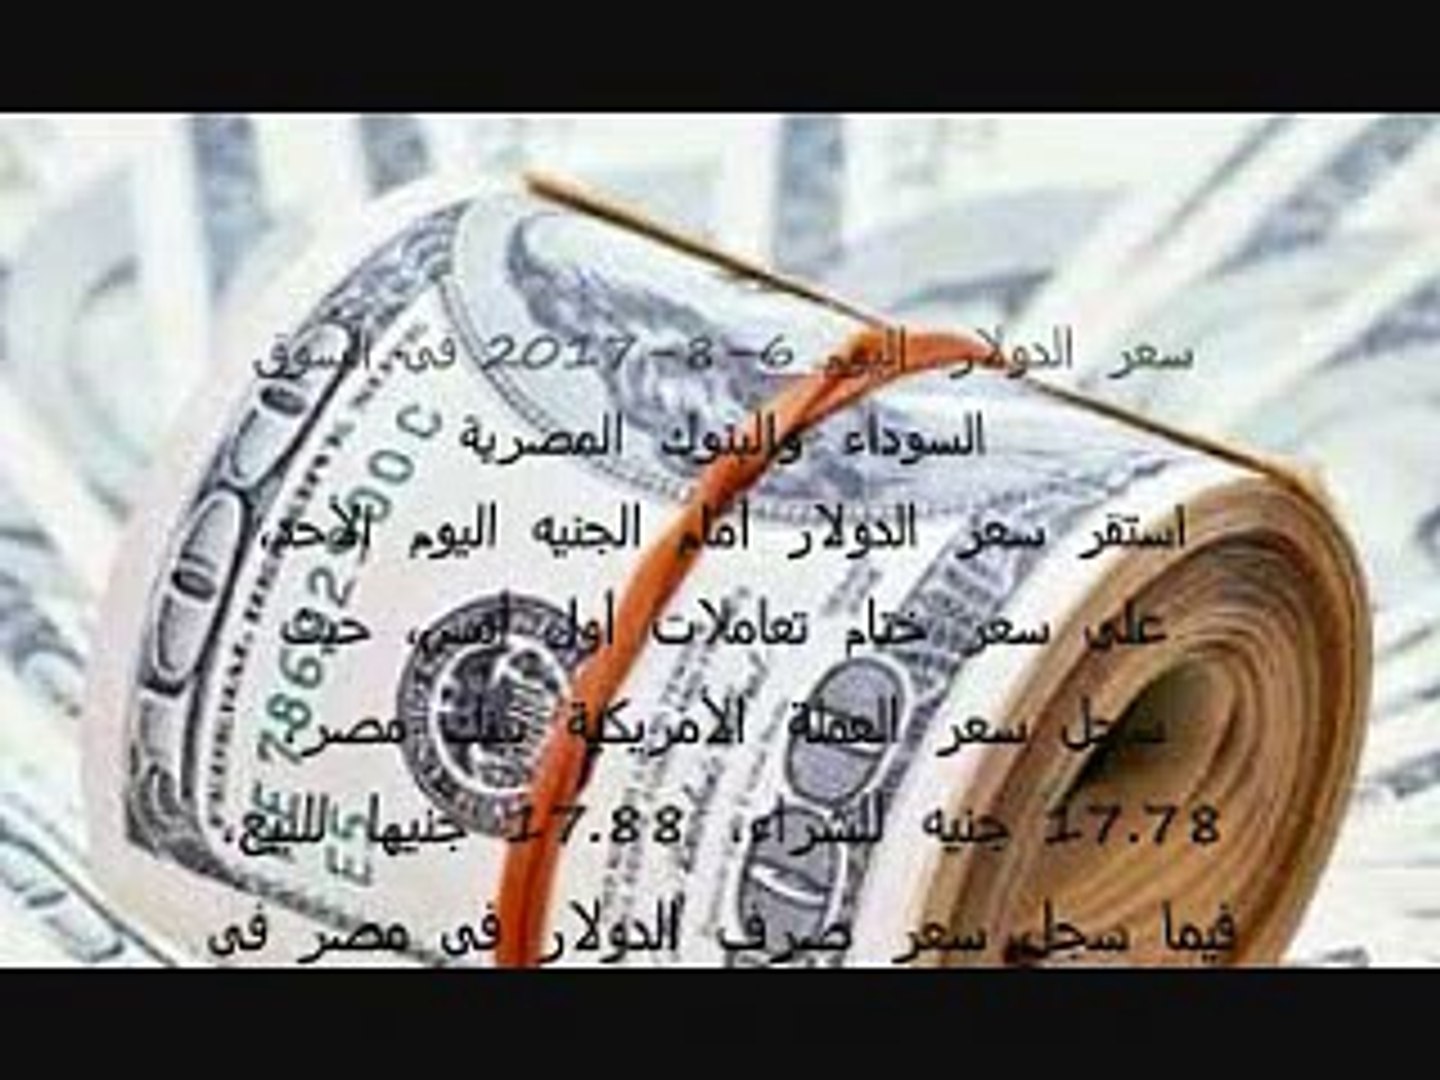 سعر الدولار اليوم فى مصر 6 8 2017 فى السوق السوداء والبنوك Video